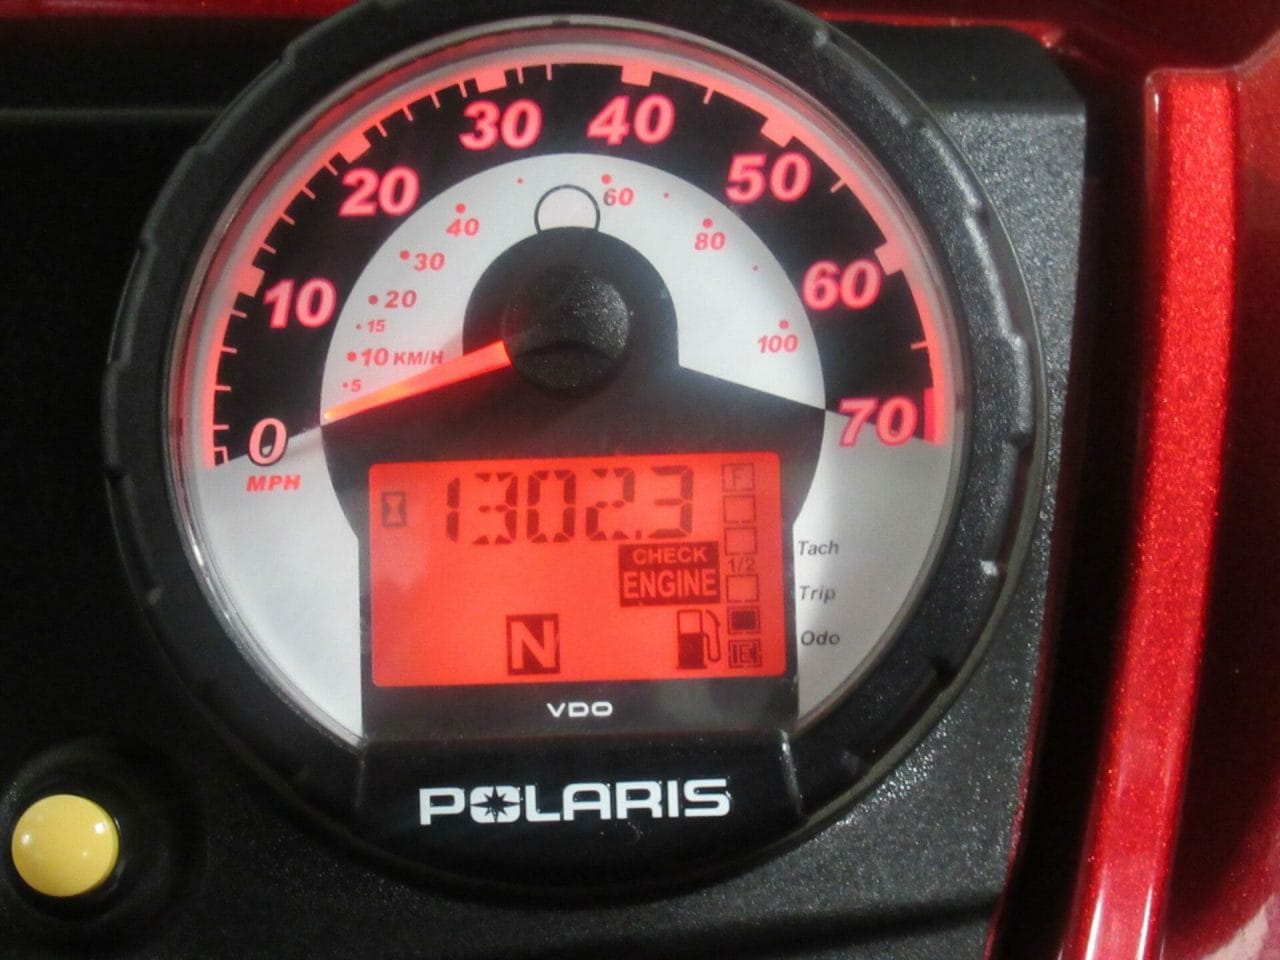 2009 Polaris Ranger 700 XP * Excellent Condition